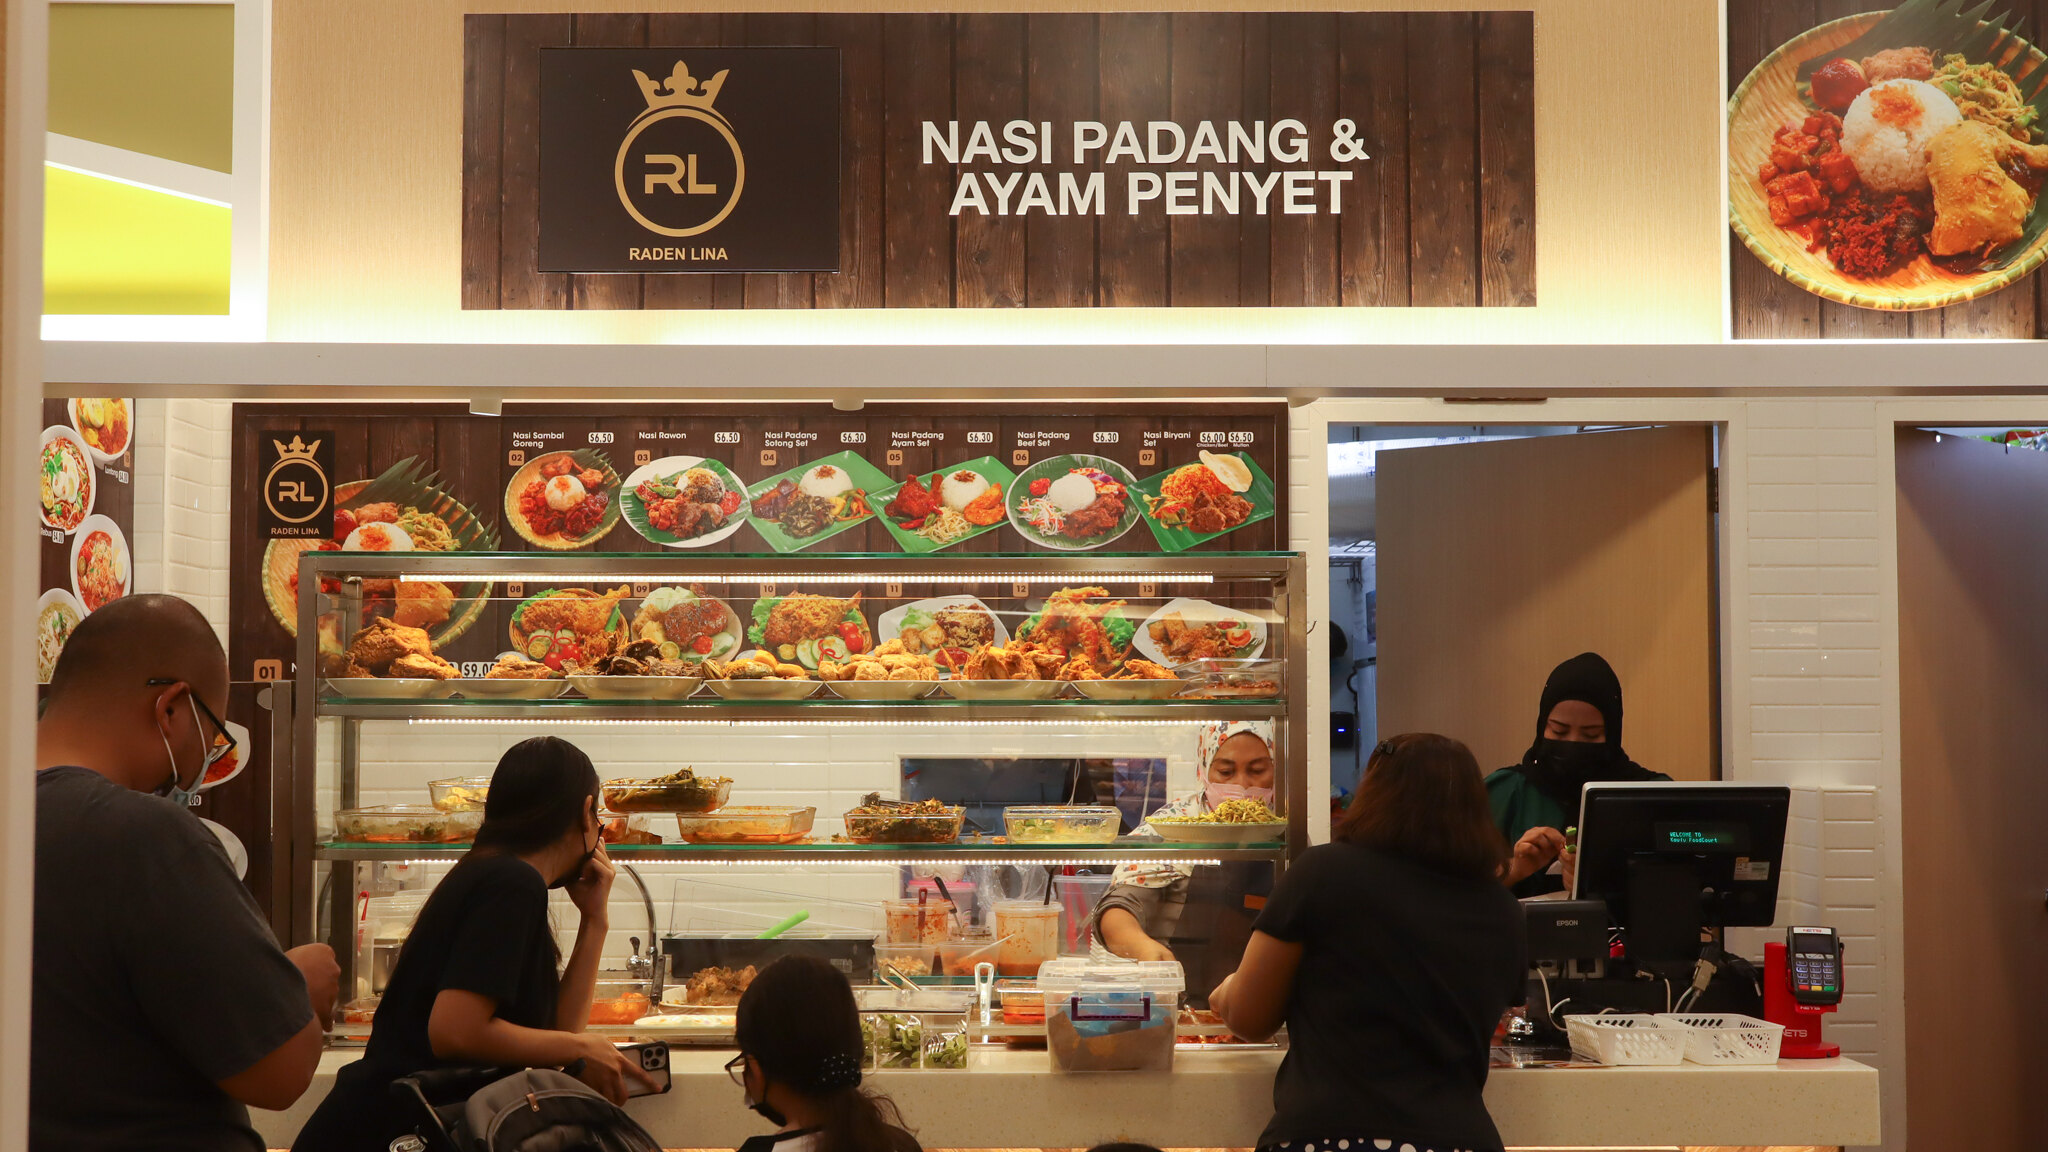 雷登丽娜·纳西·帕登（Lina Nasi Padang） - 商店前